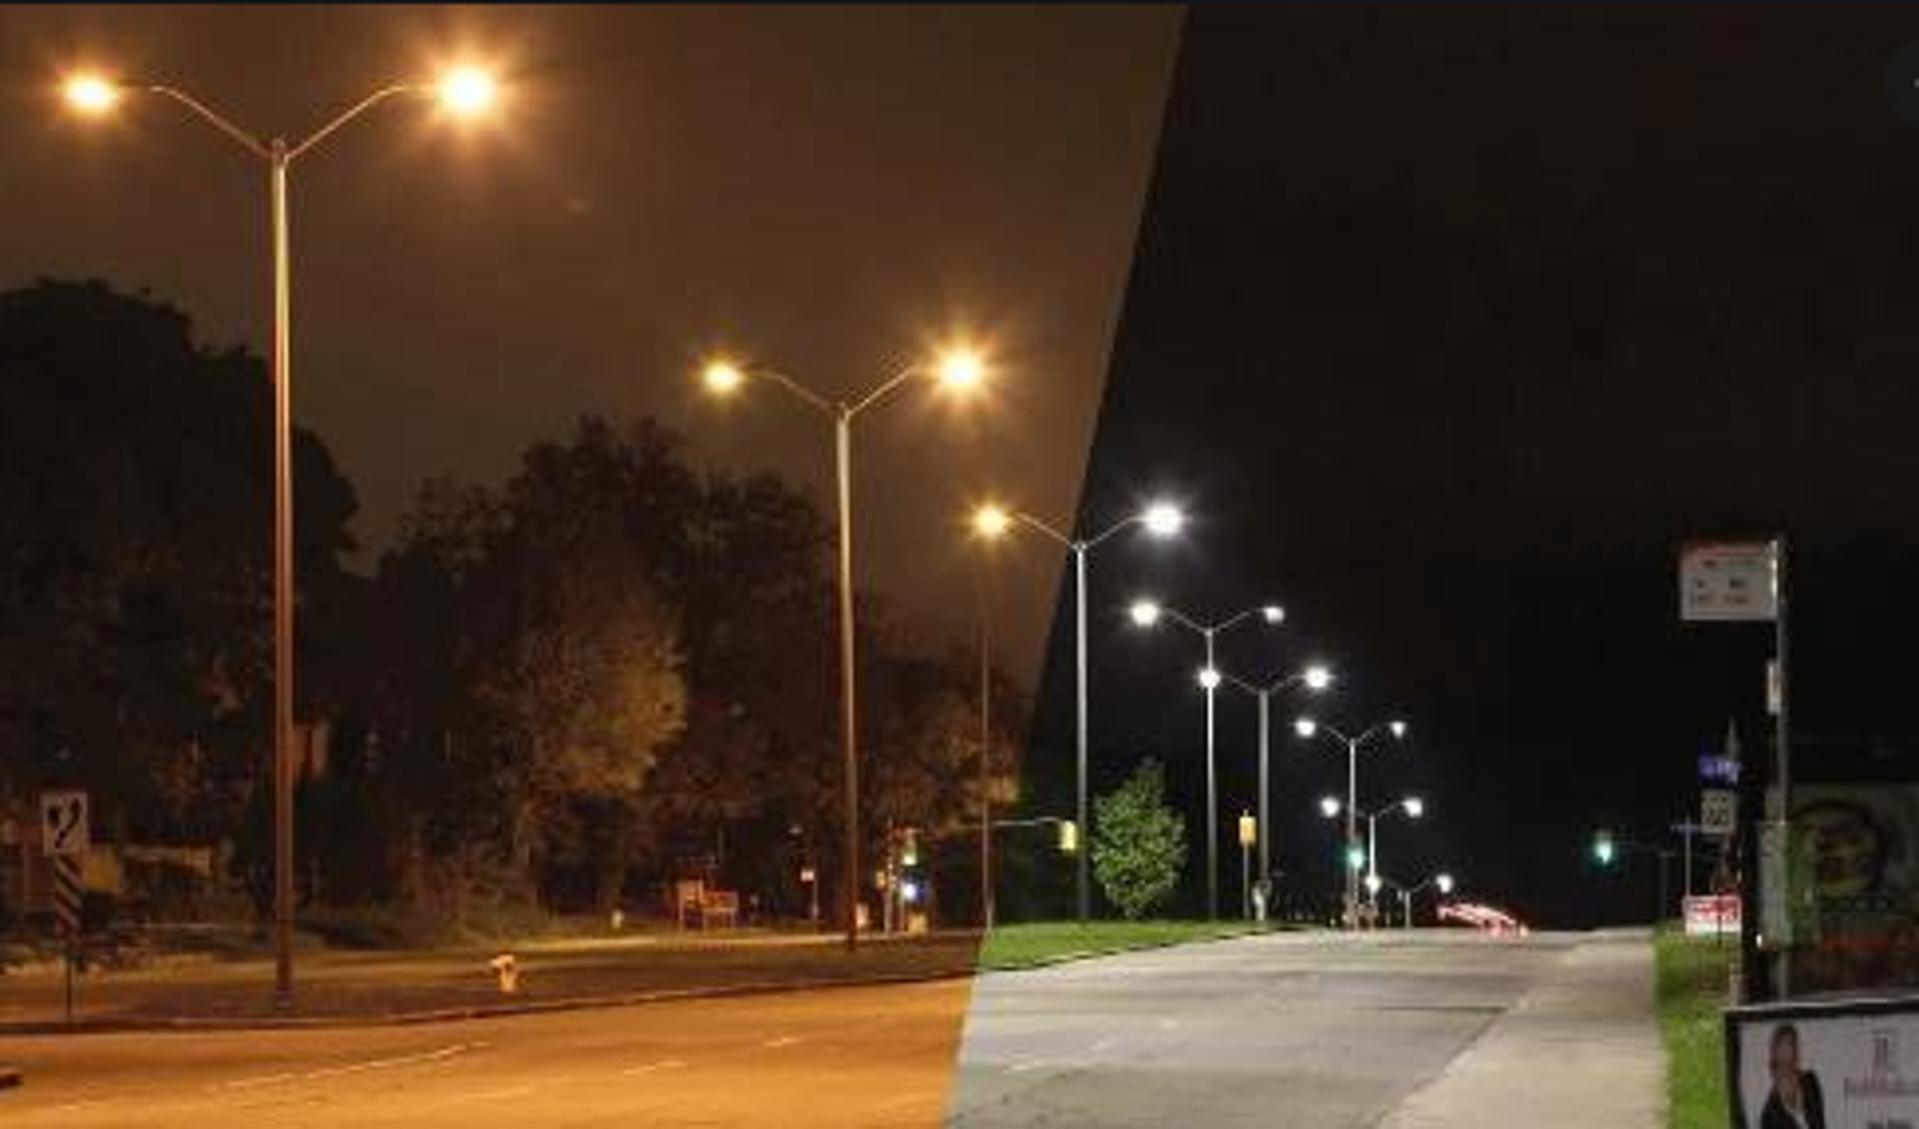 Voorbeeld van led-verlichting op de openbare weg.